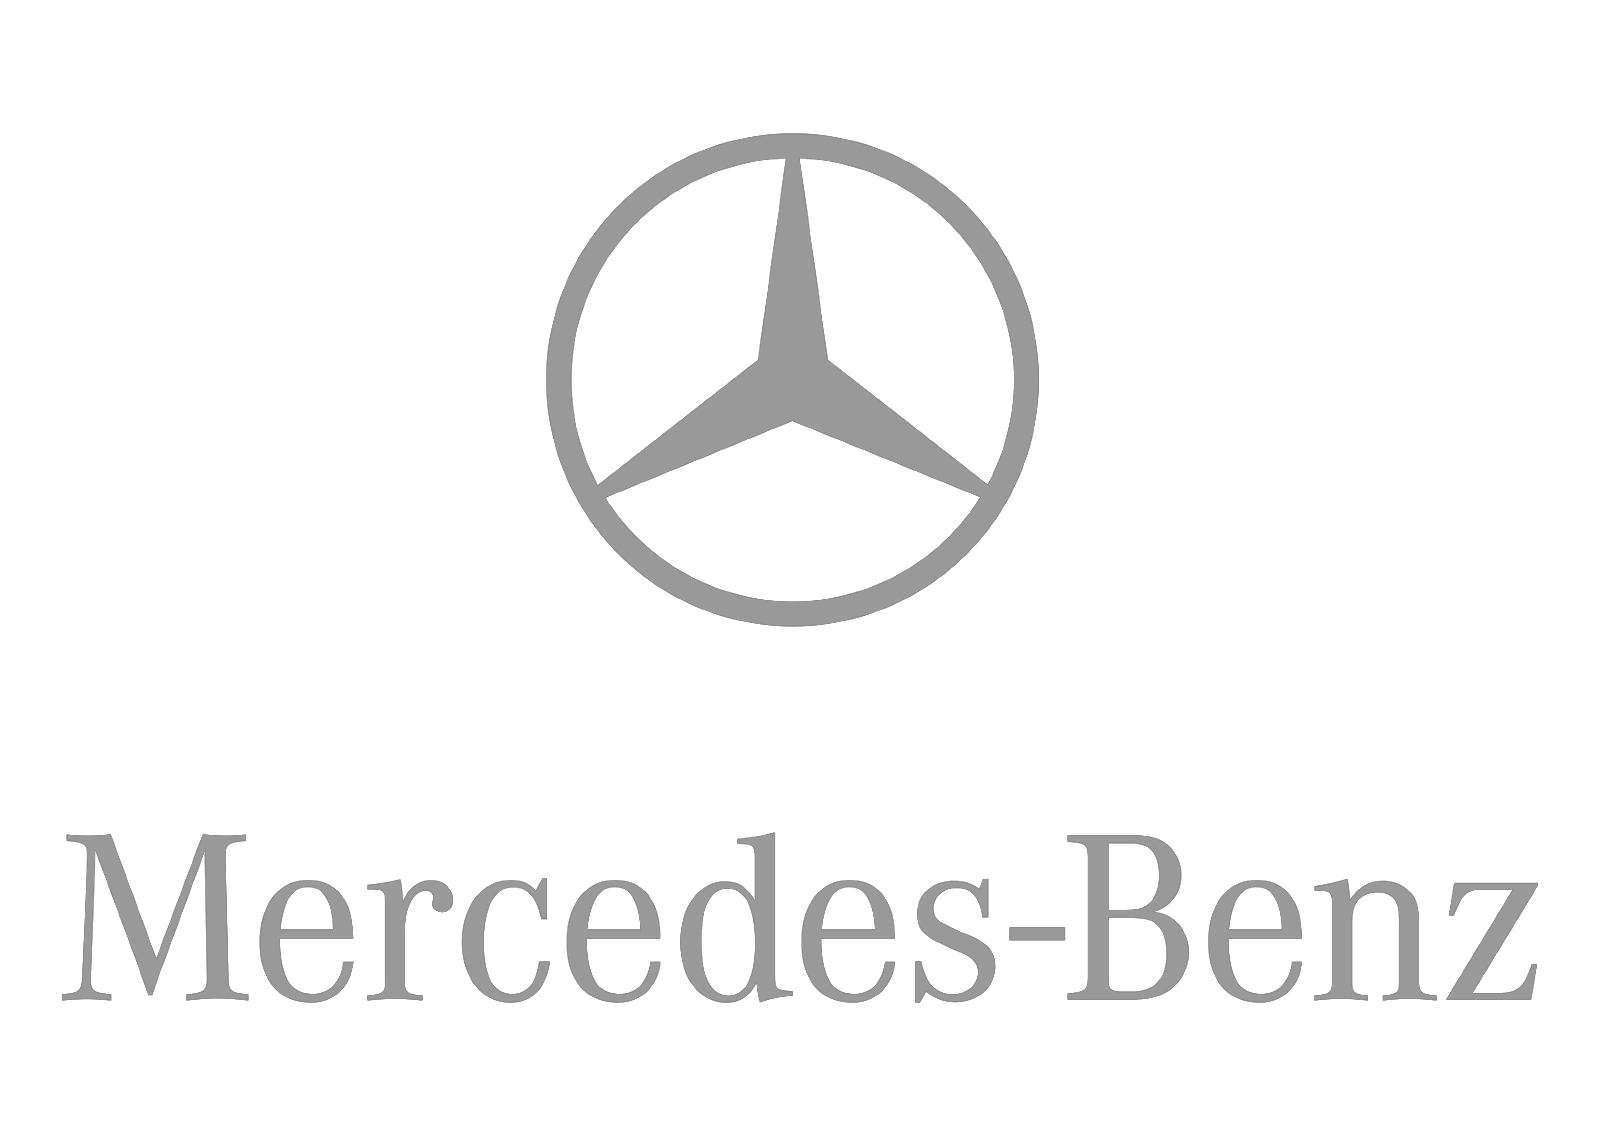 Mercedes-Benz-logo.png